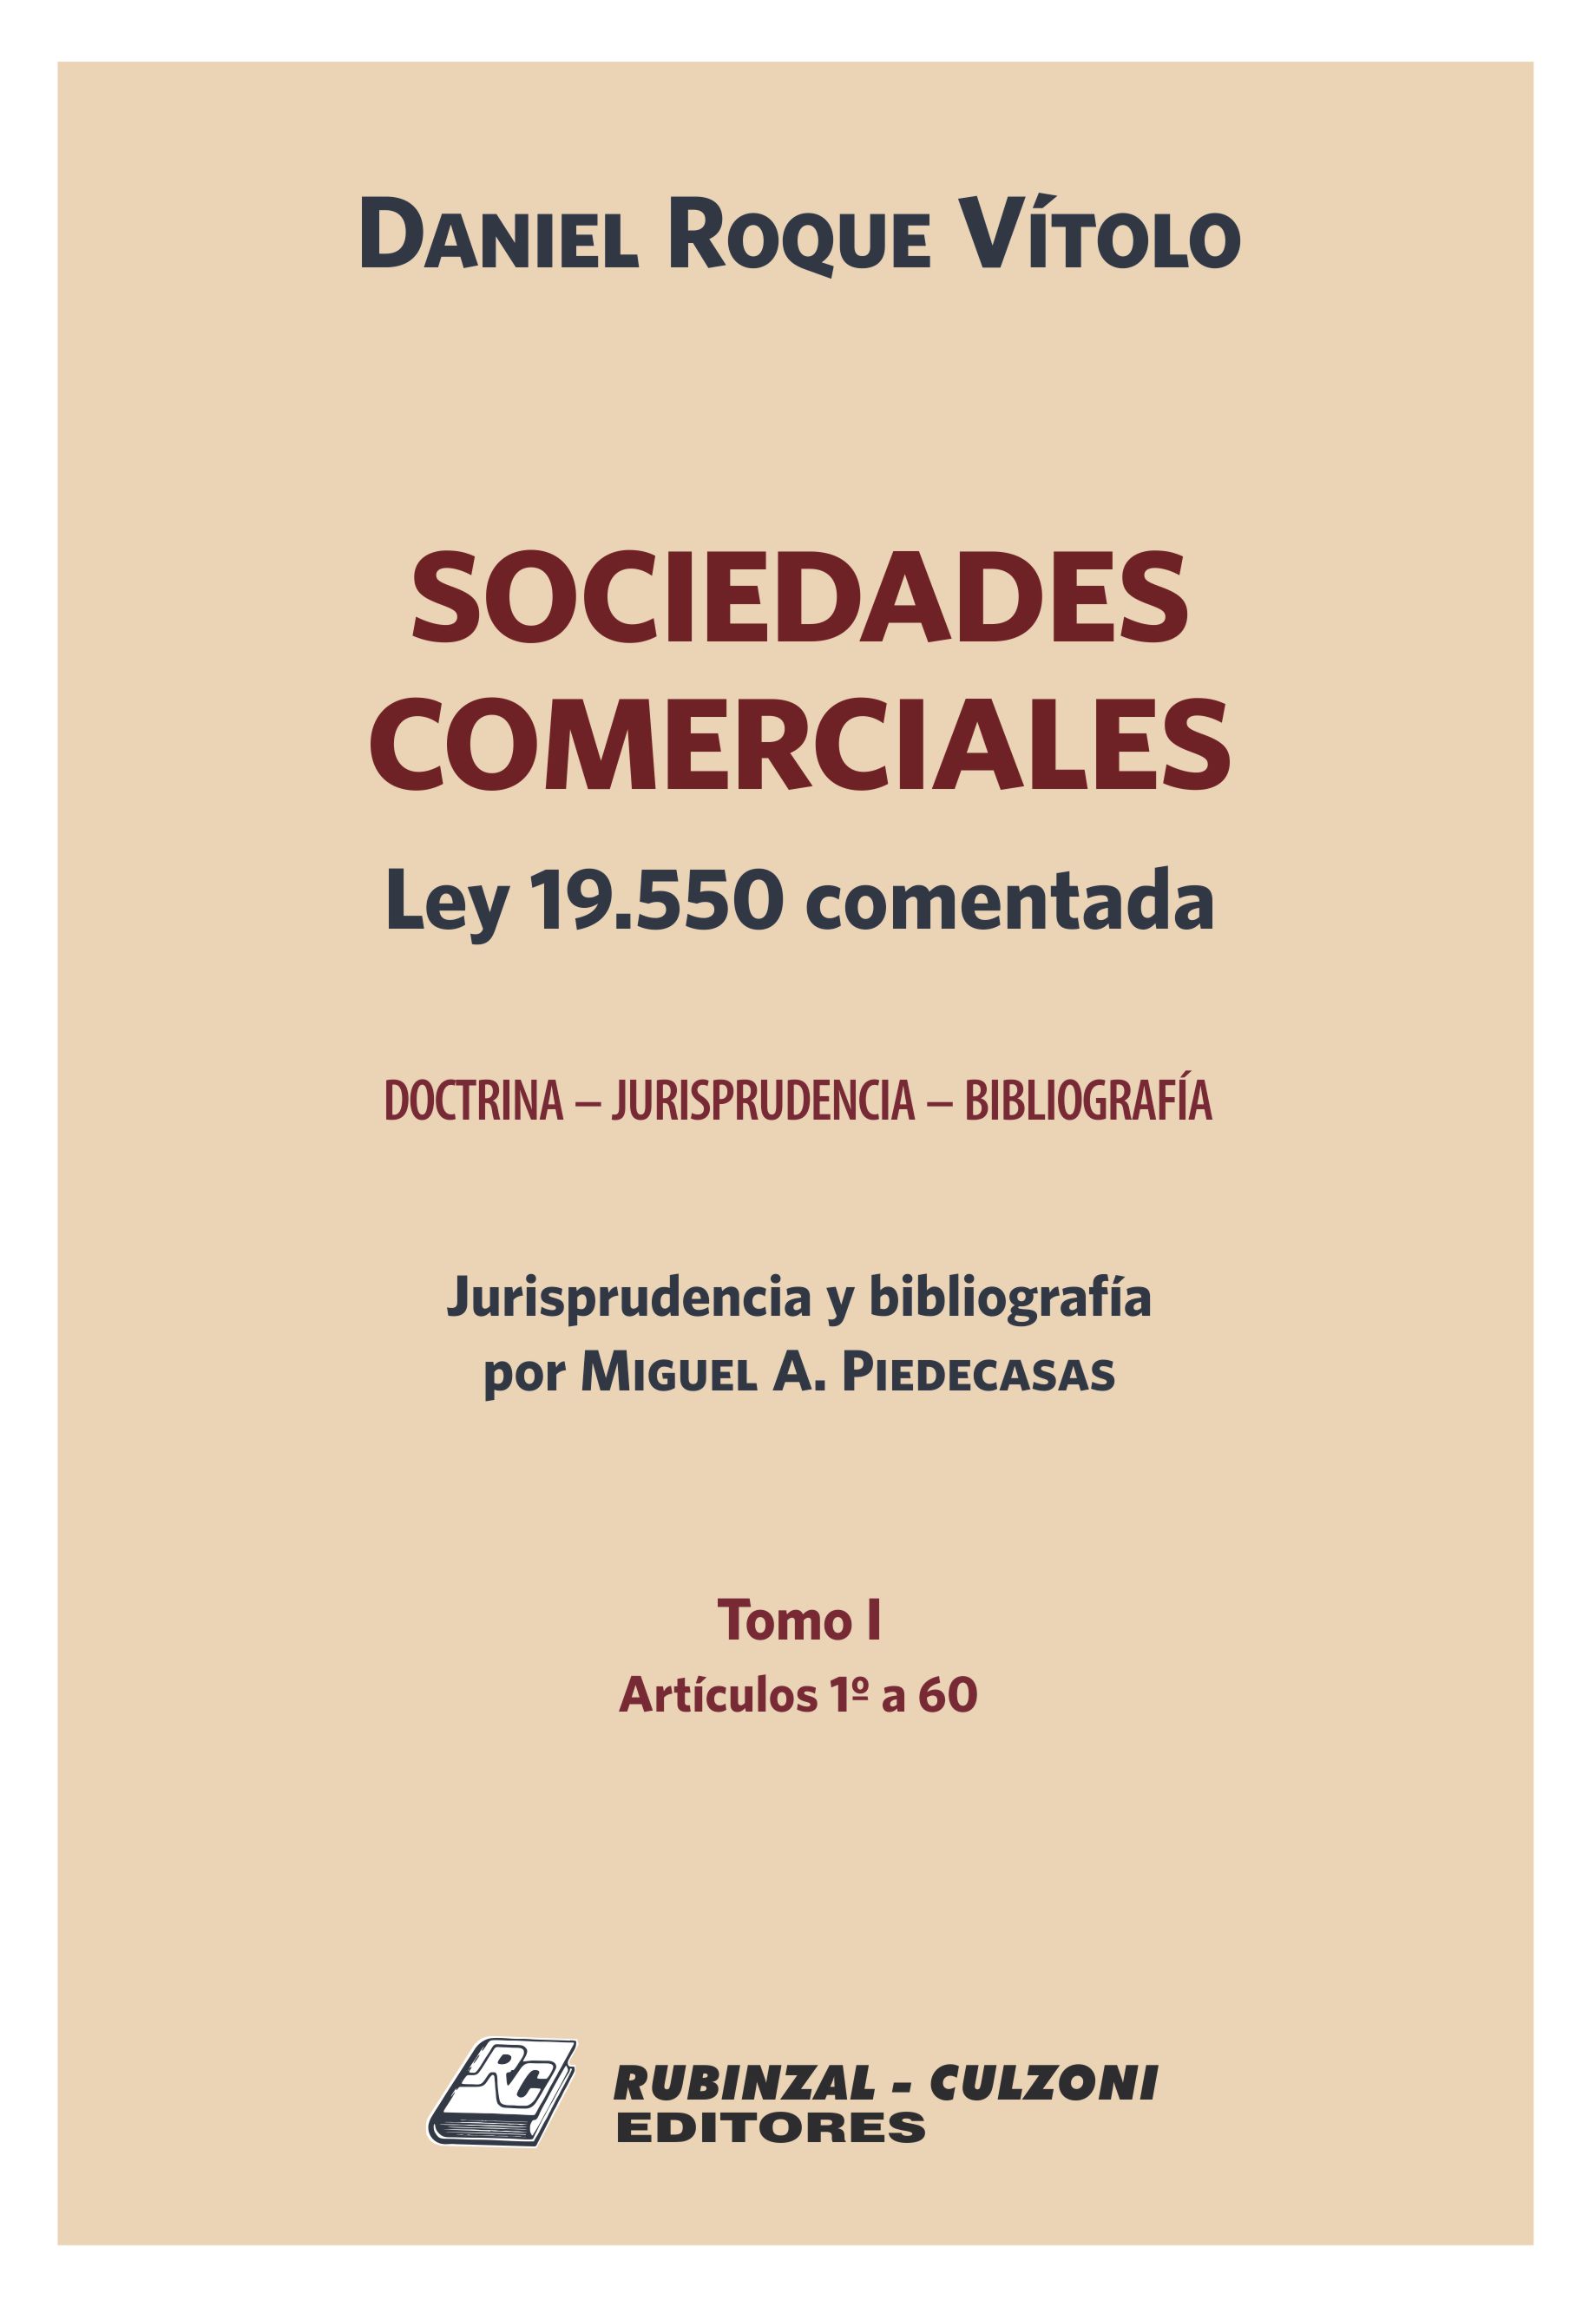 Sociedades Comerciales. Ley 19.550 comentada (Doctrina - Jurisprudencia - Bibliografía). - Tomo I (Artículos 1 a 60).